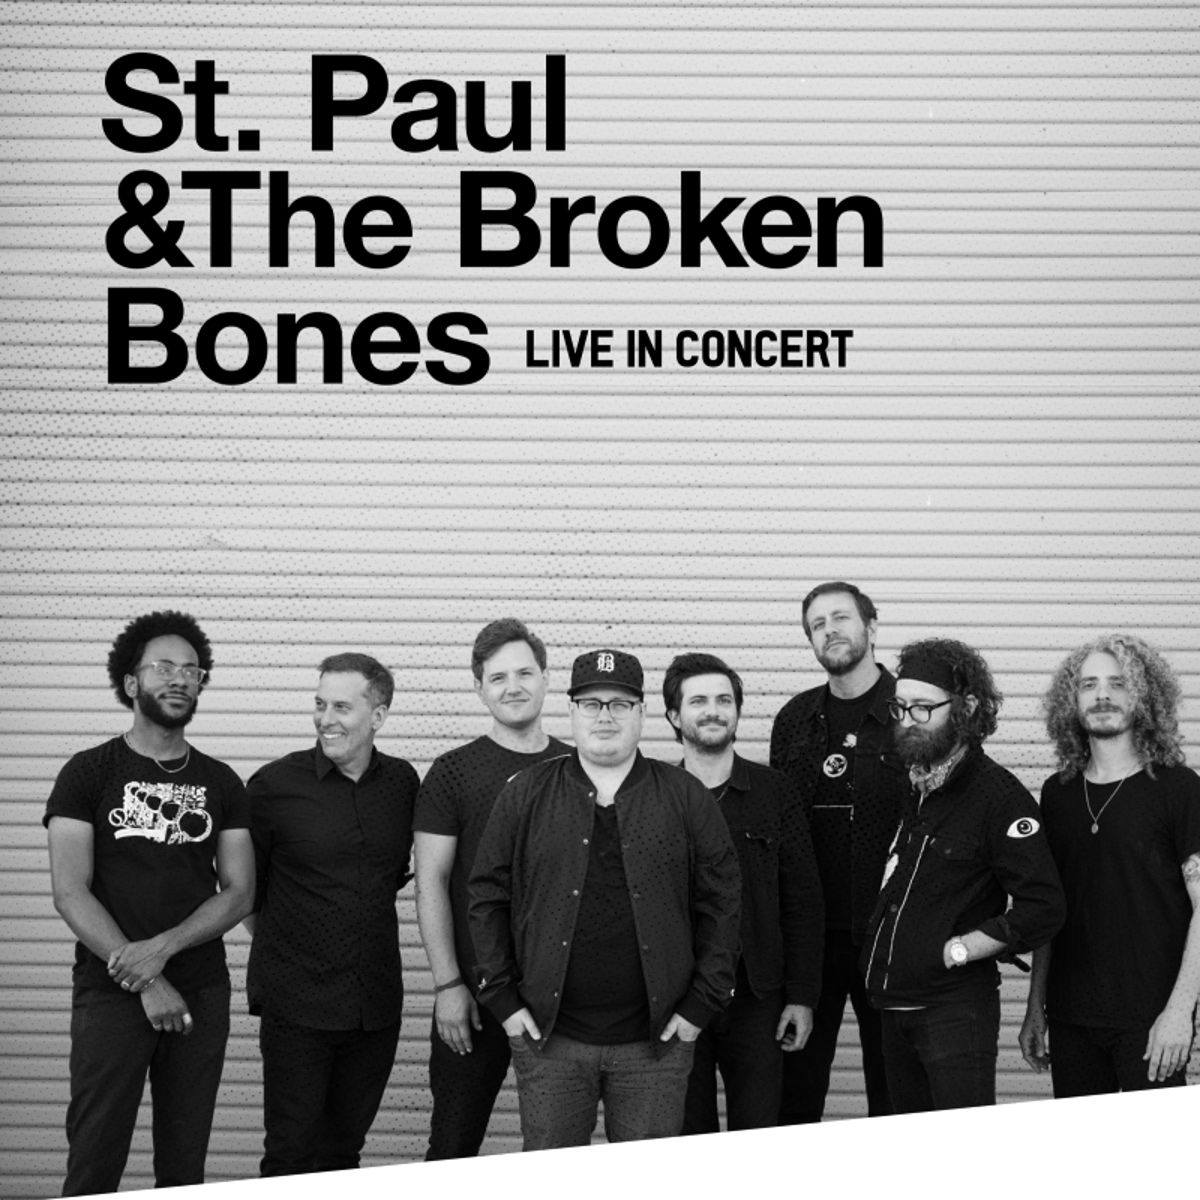 ST. PAUL & THE BROKEN BONES